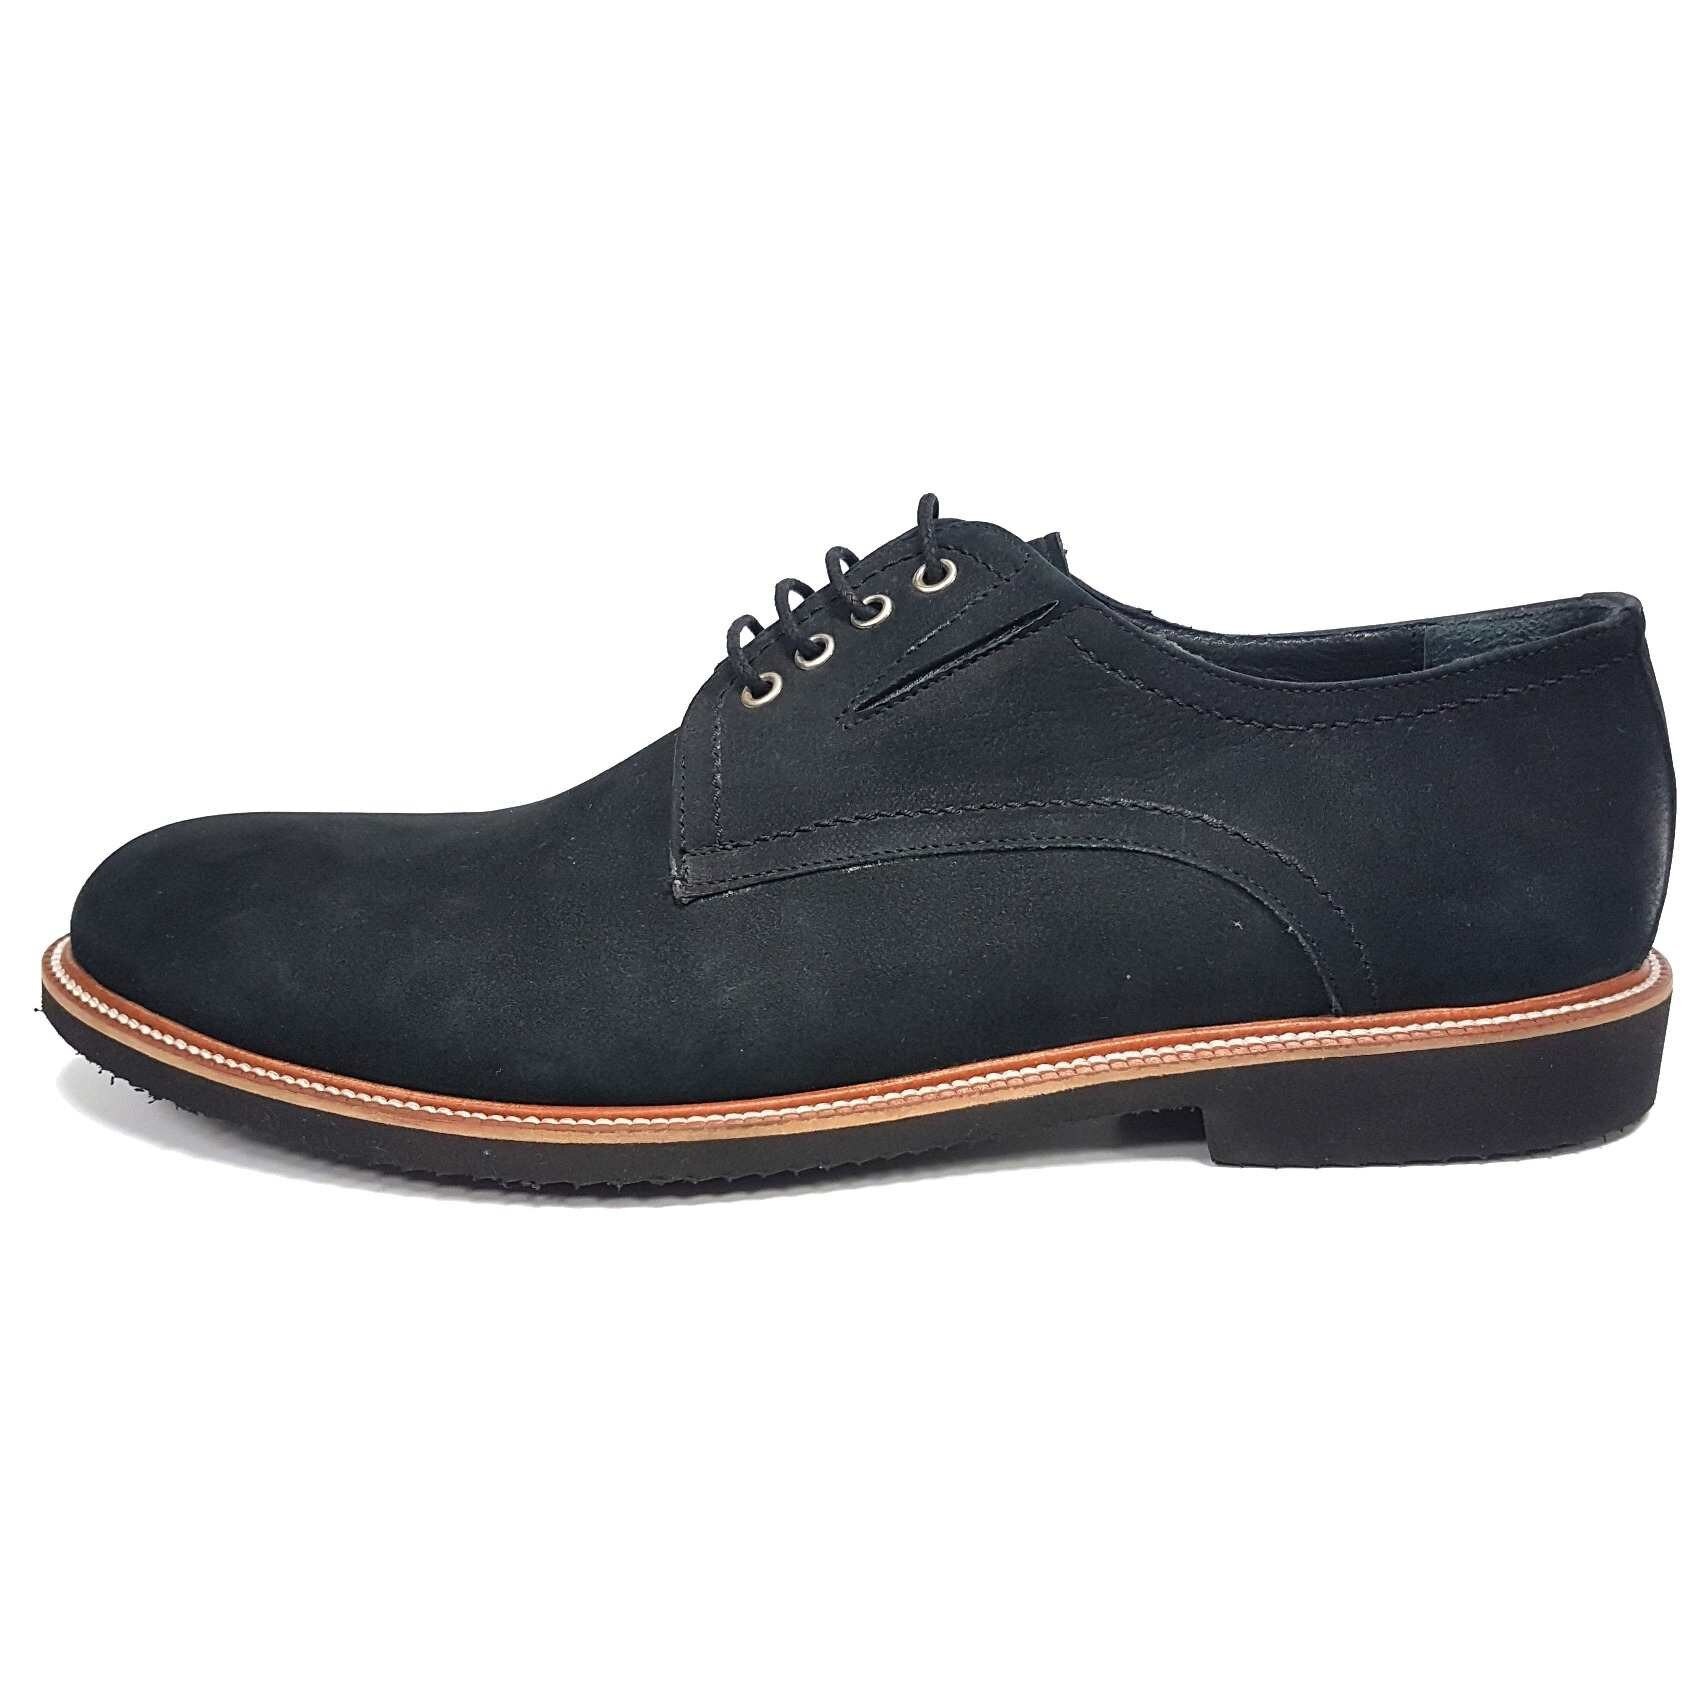 essay Figure claw Pantofi barbati, din piele naturala, marca Dogati, 3802-01-75, negru, 43 -  eMAG.ro